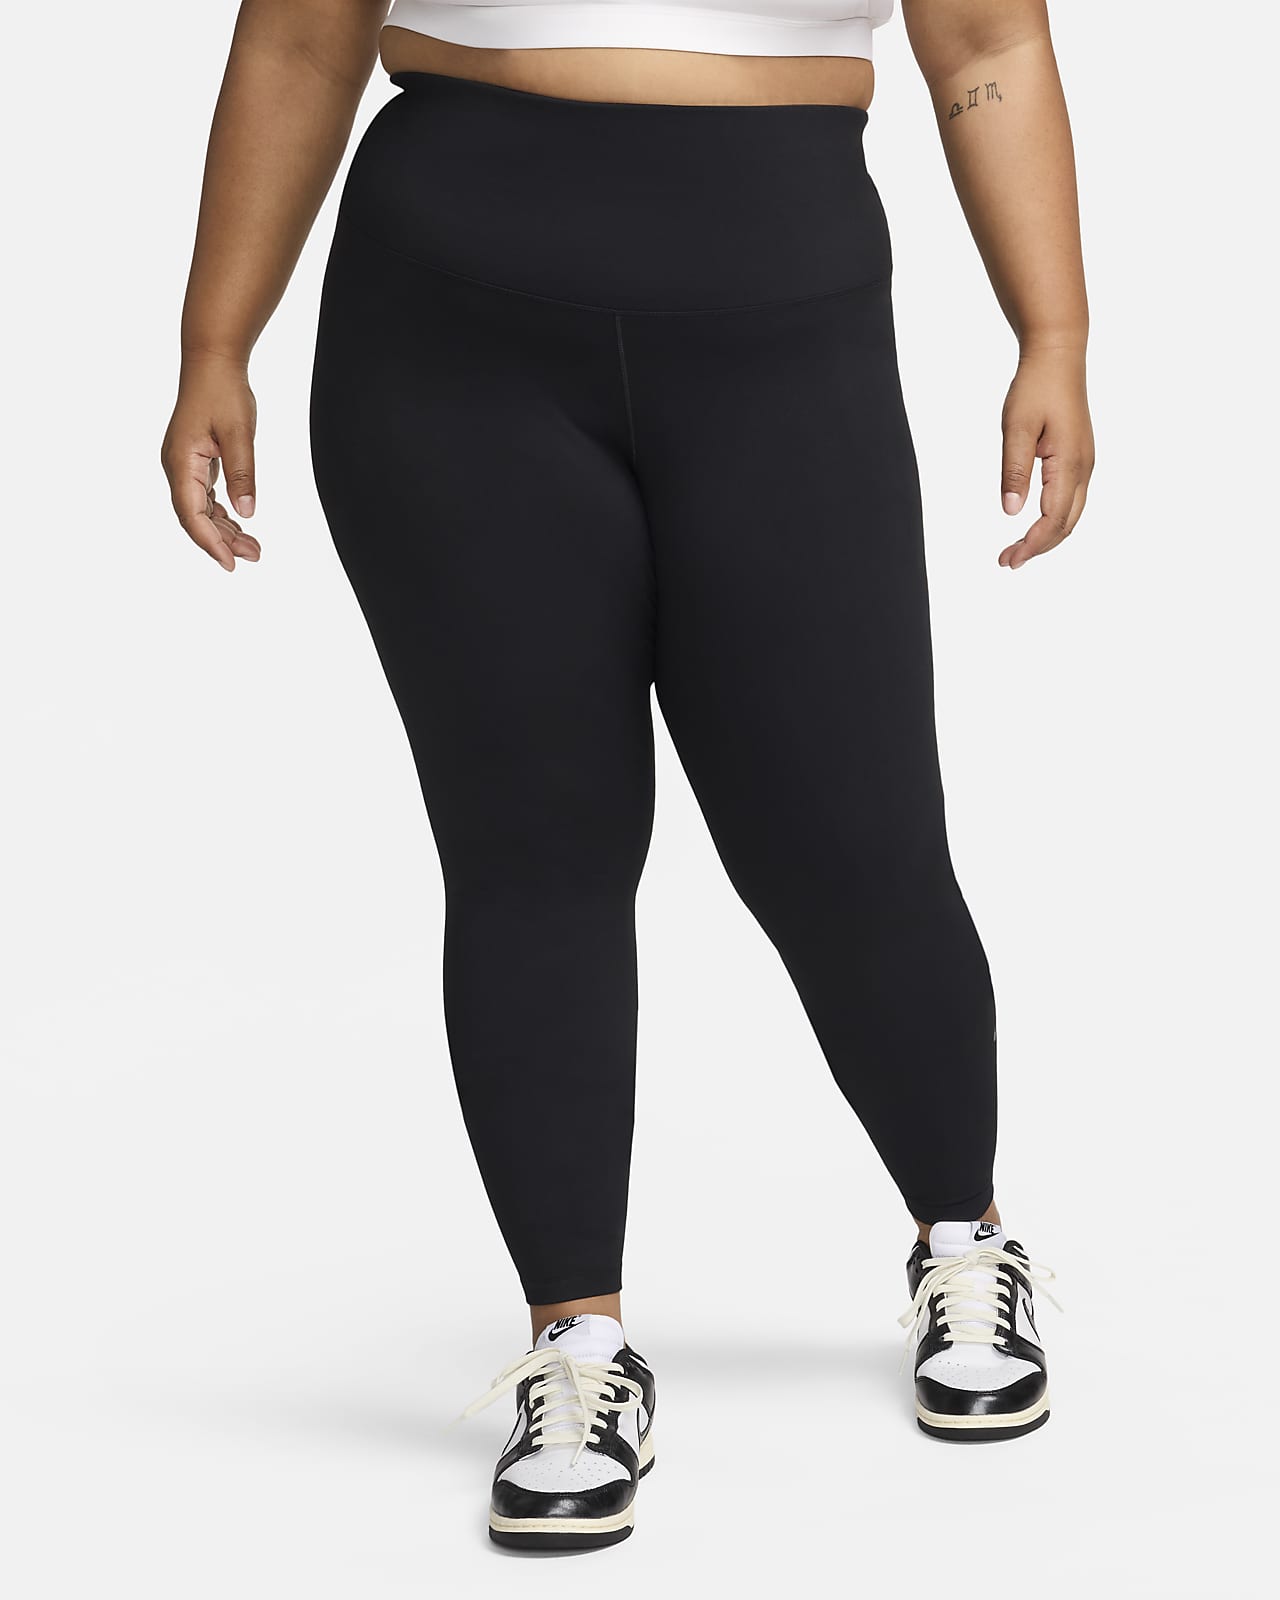 Nike One Leggings in voller Länge mit hohem Bund für Damen (große Größe)